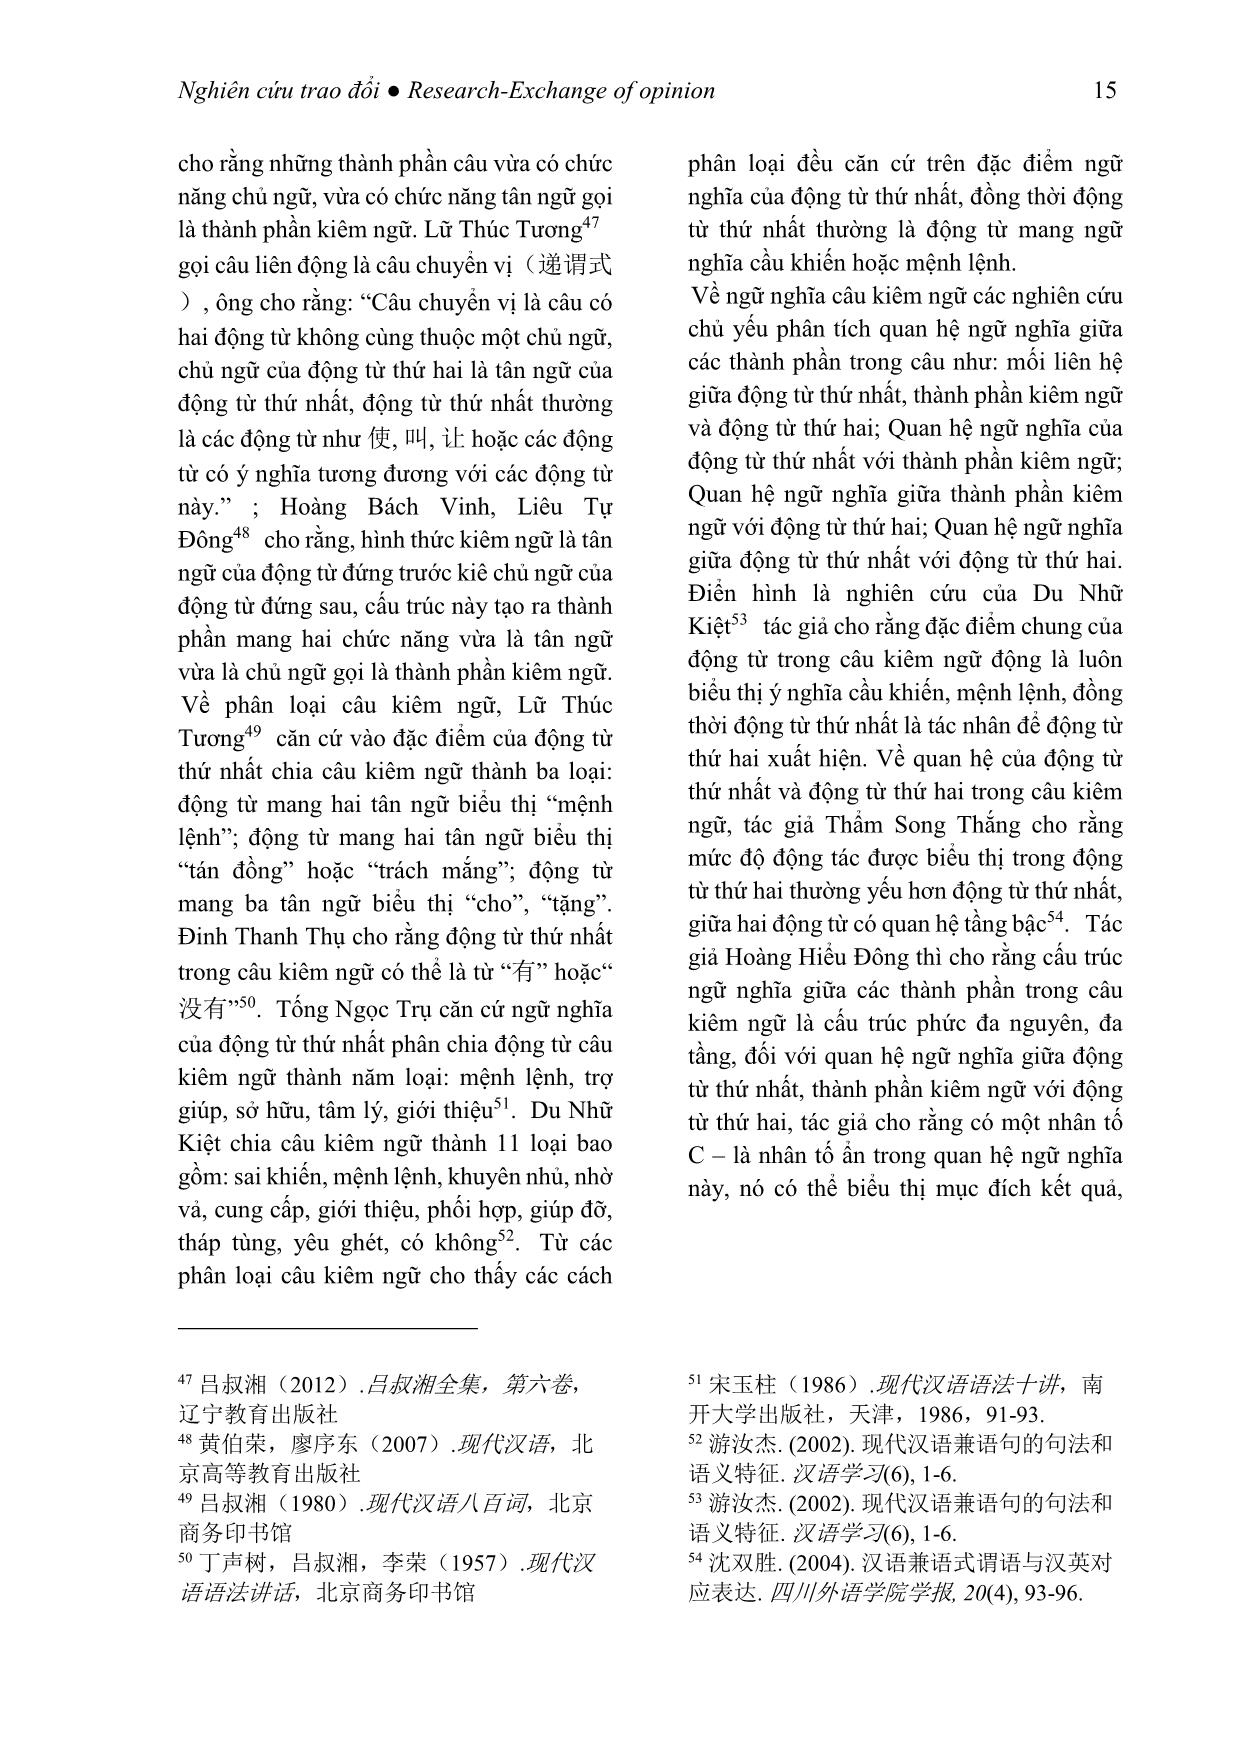 Tình hình nghiên cứu các kiểu câu đặc biệt trong tiếng Trung Quốc tại Trung Quốc trang 7